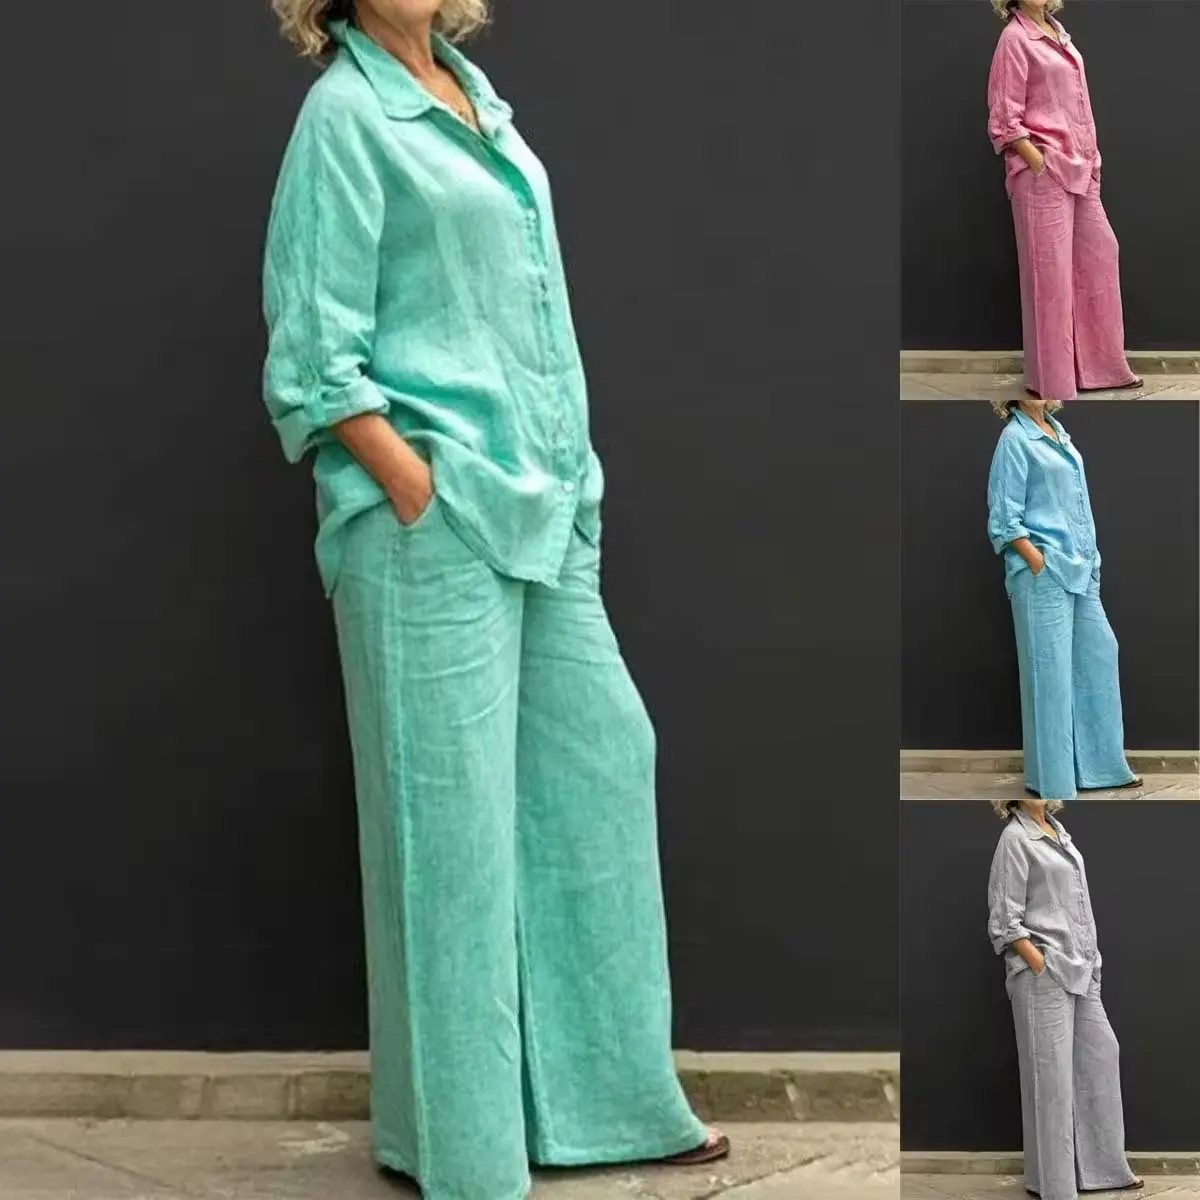 फैशन महिलाओं के कपड़े विक्रेता लेडीज़ स्ट्रीट वियर लंबी बांह की शर्ट और पैंट मैचिंग सूट 2 पीस सेट